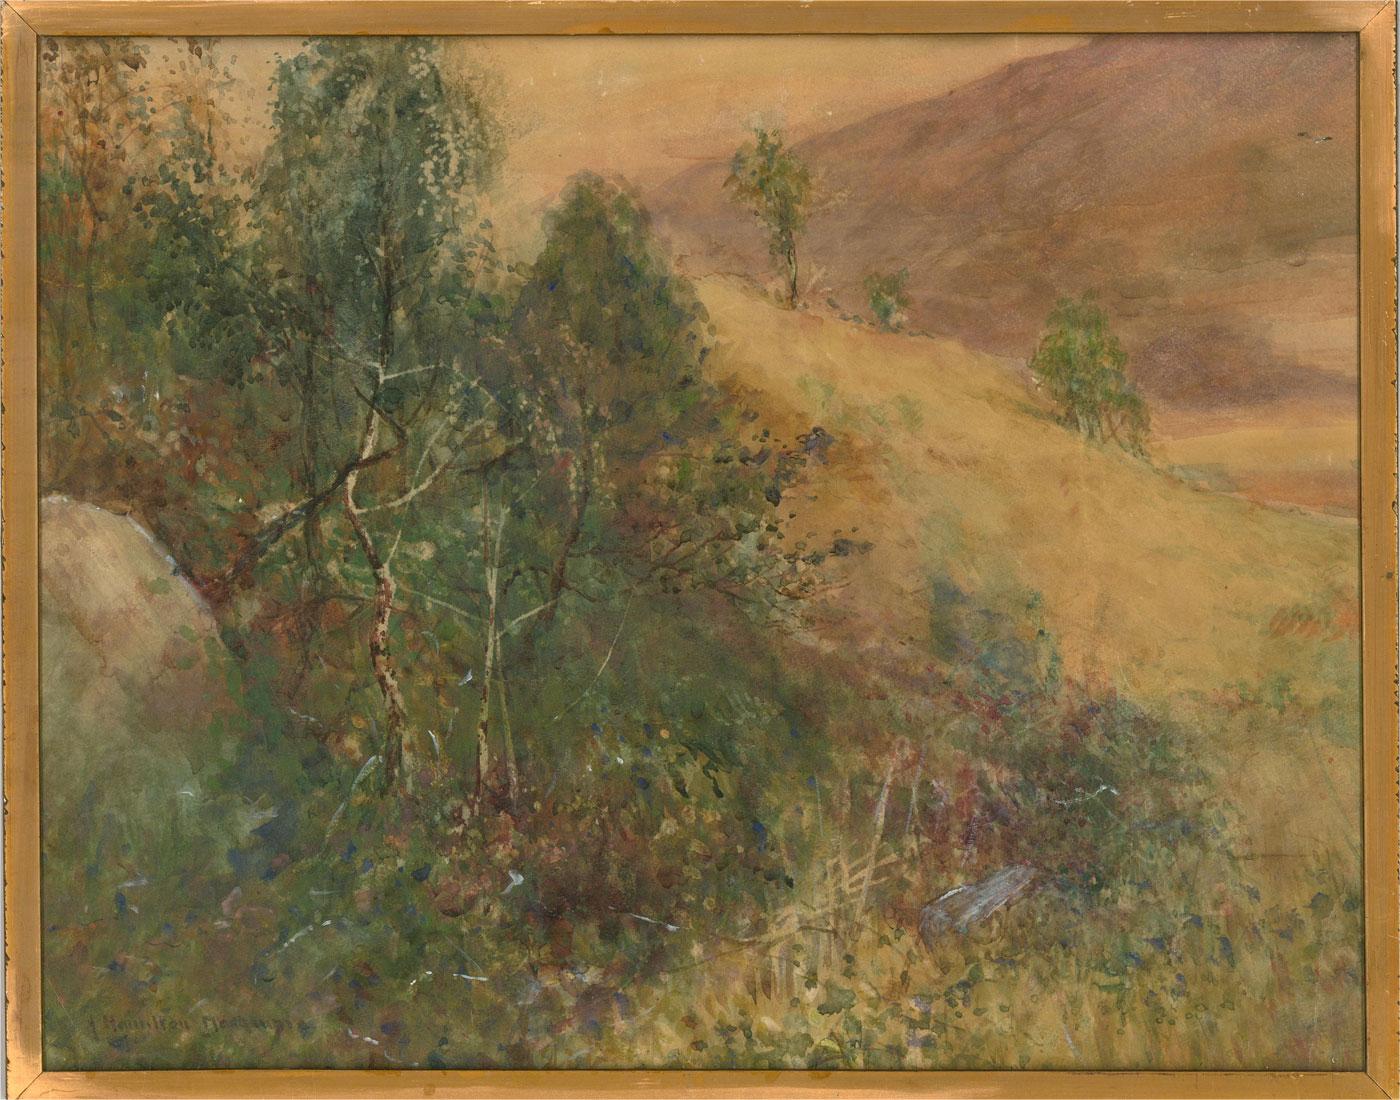 Une charmante aquarelle avec des détails à la gouache de l'artiste James Hamilton Mackenzie. La scène représente un paysage étendu avec des arbres. Signé dans le coin inférieur gauche. Présenté dans un étui fin et doré. Sur papier aquarelle.

